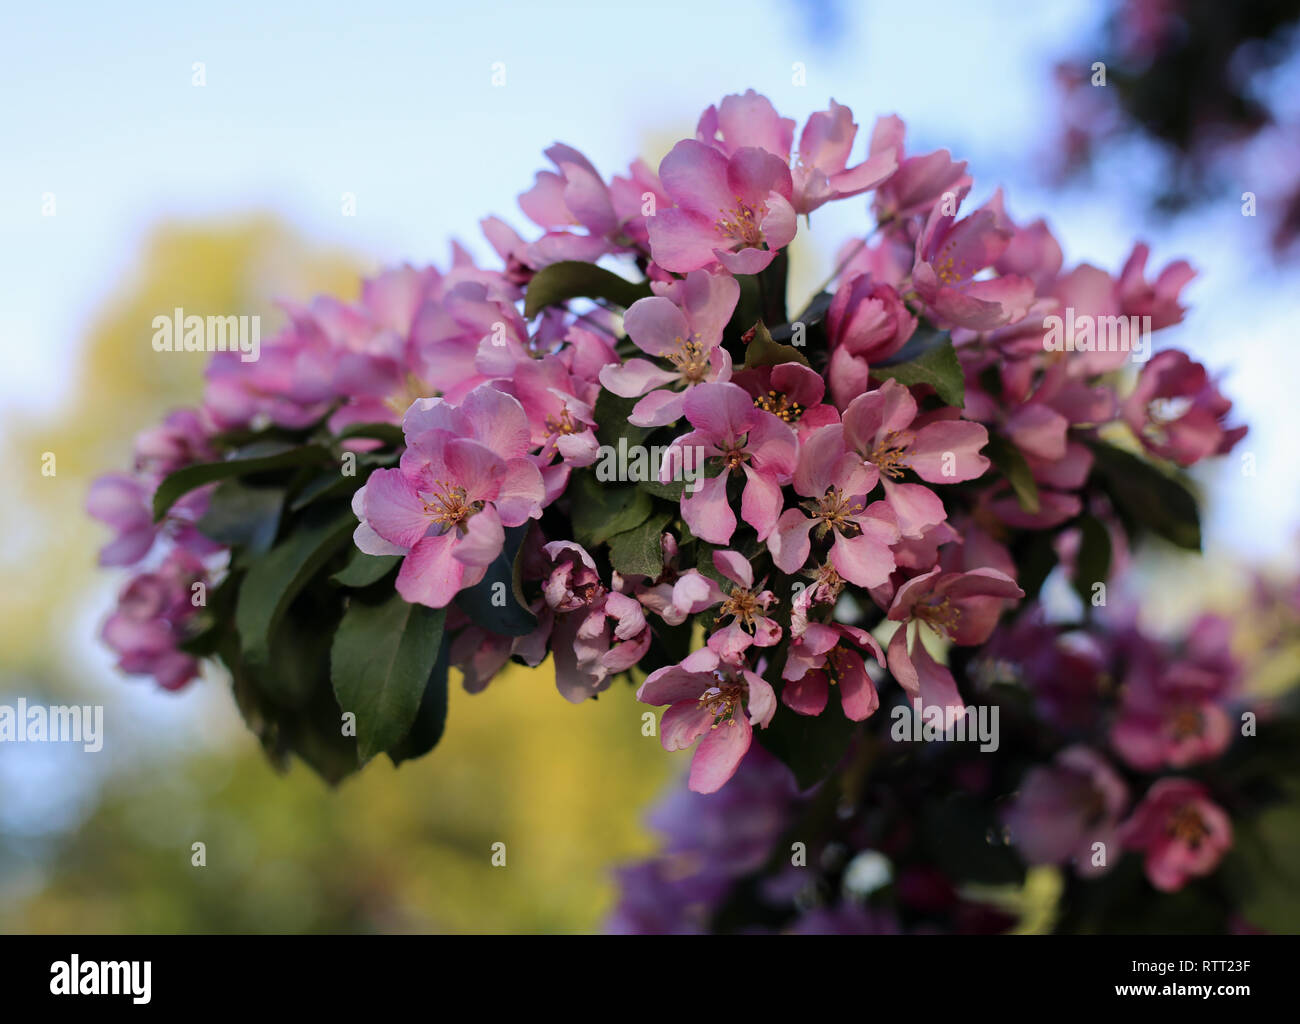 Rosa fiori di ciliegio in un ramo di albero durante una soleggiata giornata di primavera. Bella, carino e fiori femminili. Un primo piano immagine. Immagine a colori. Foto Stock